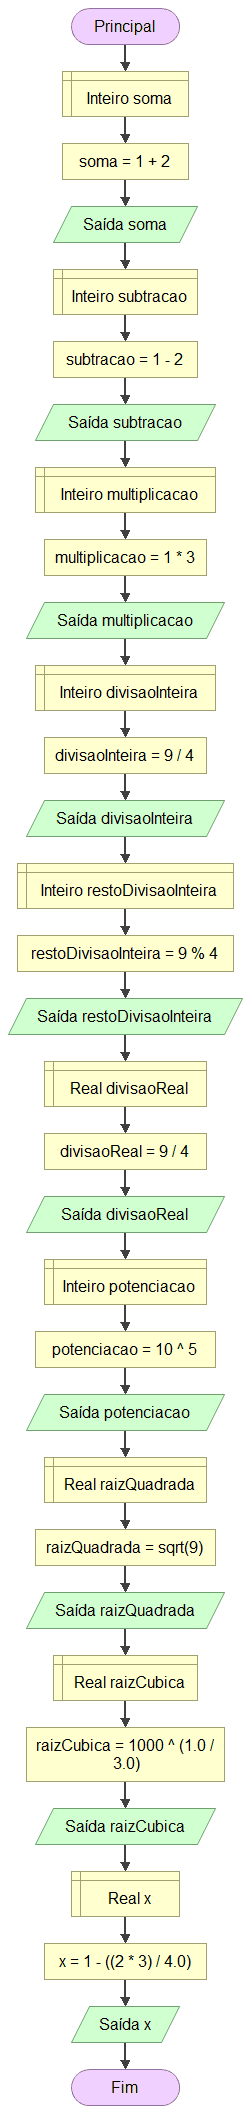 Exemplo de operações aritméticas básicas em Flowgorithm: soma, subtração, multiplicação, divisão inteira, resto de divisão inteira, divisão real, potenciação, raiz quadrada, raiz cúbica e cálculo de uma expressão.